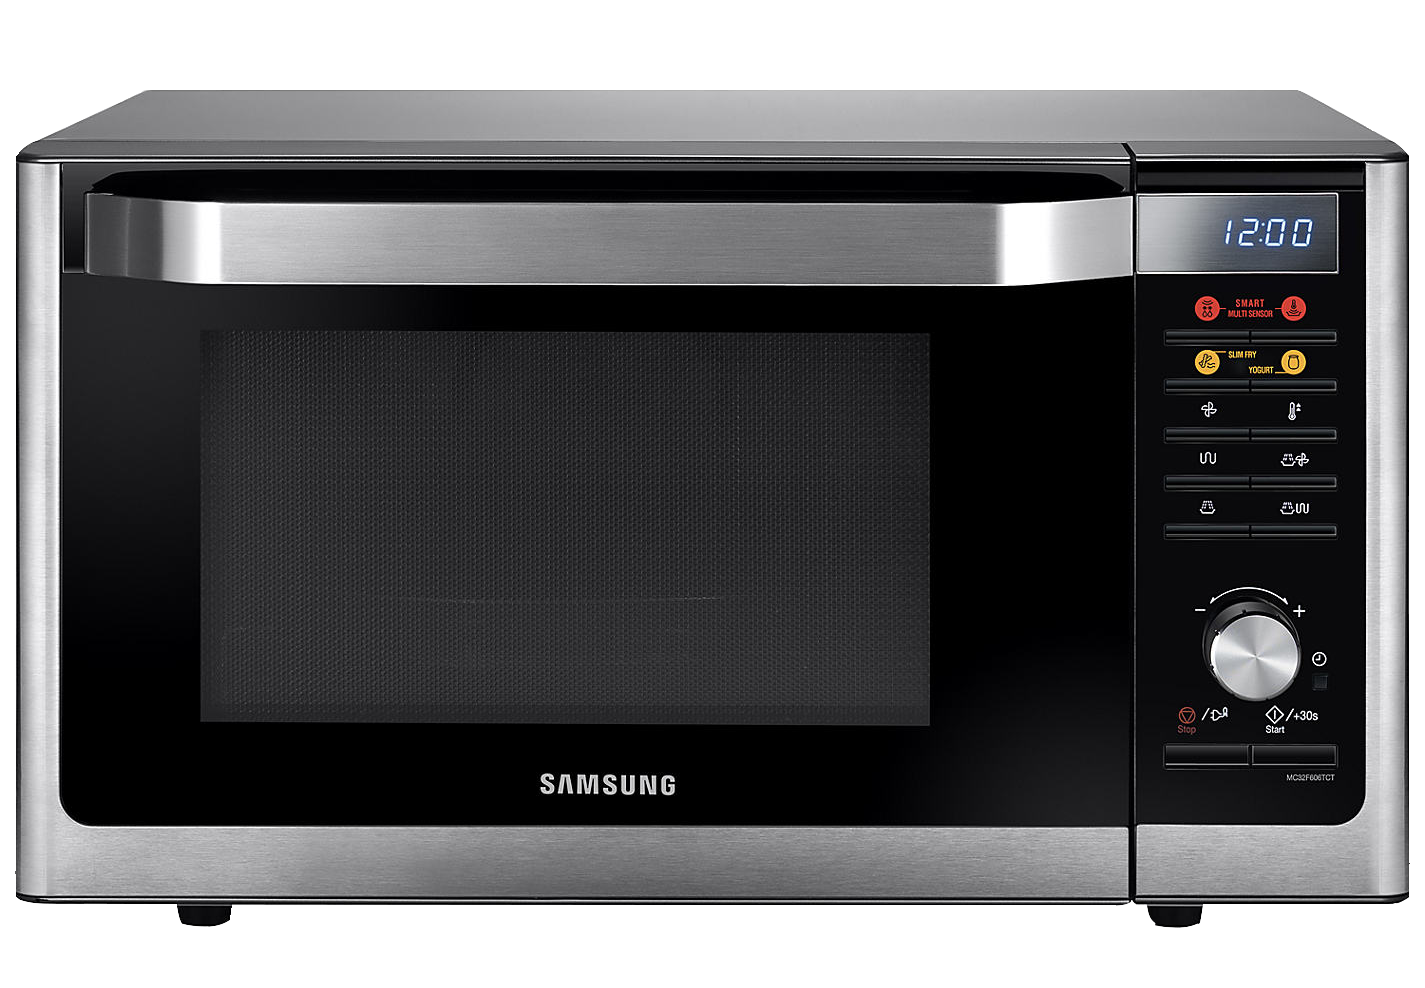 Immagine di PNG gratuita per forno a microonde Samsung